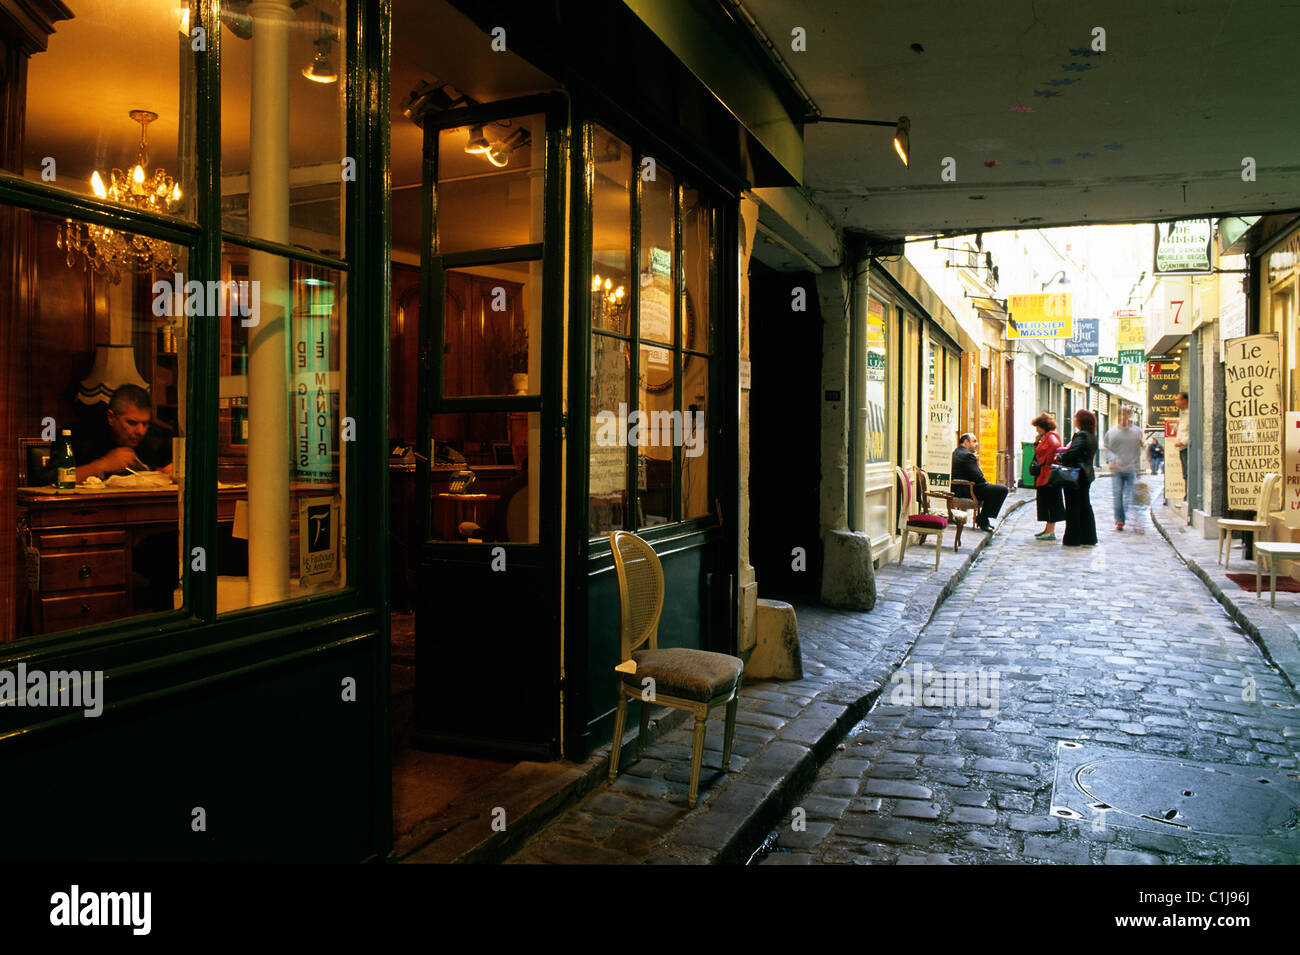 France, Paris, Faubourg Saint Antoine district, Passage du Chantier (alleyway) Stock Photo